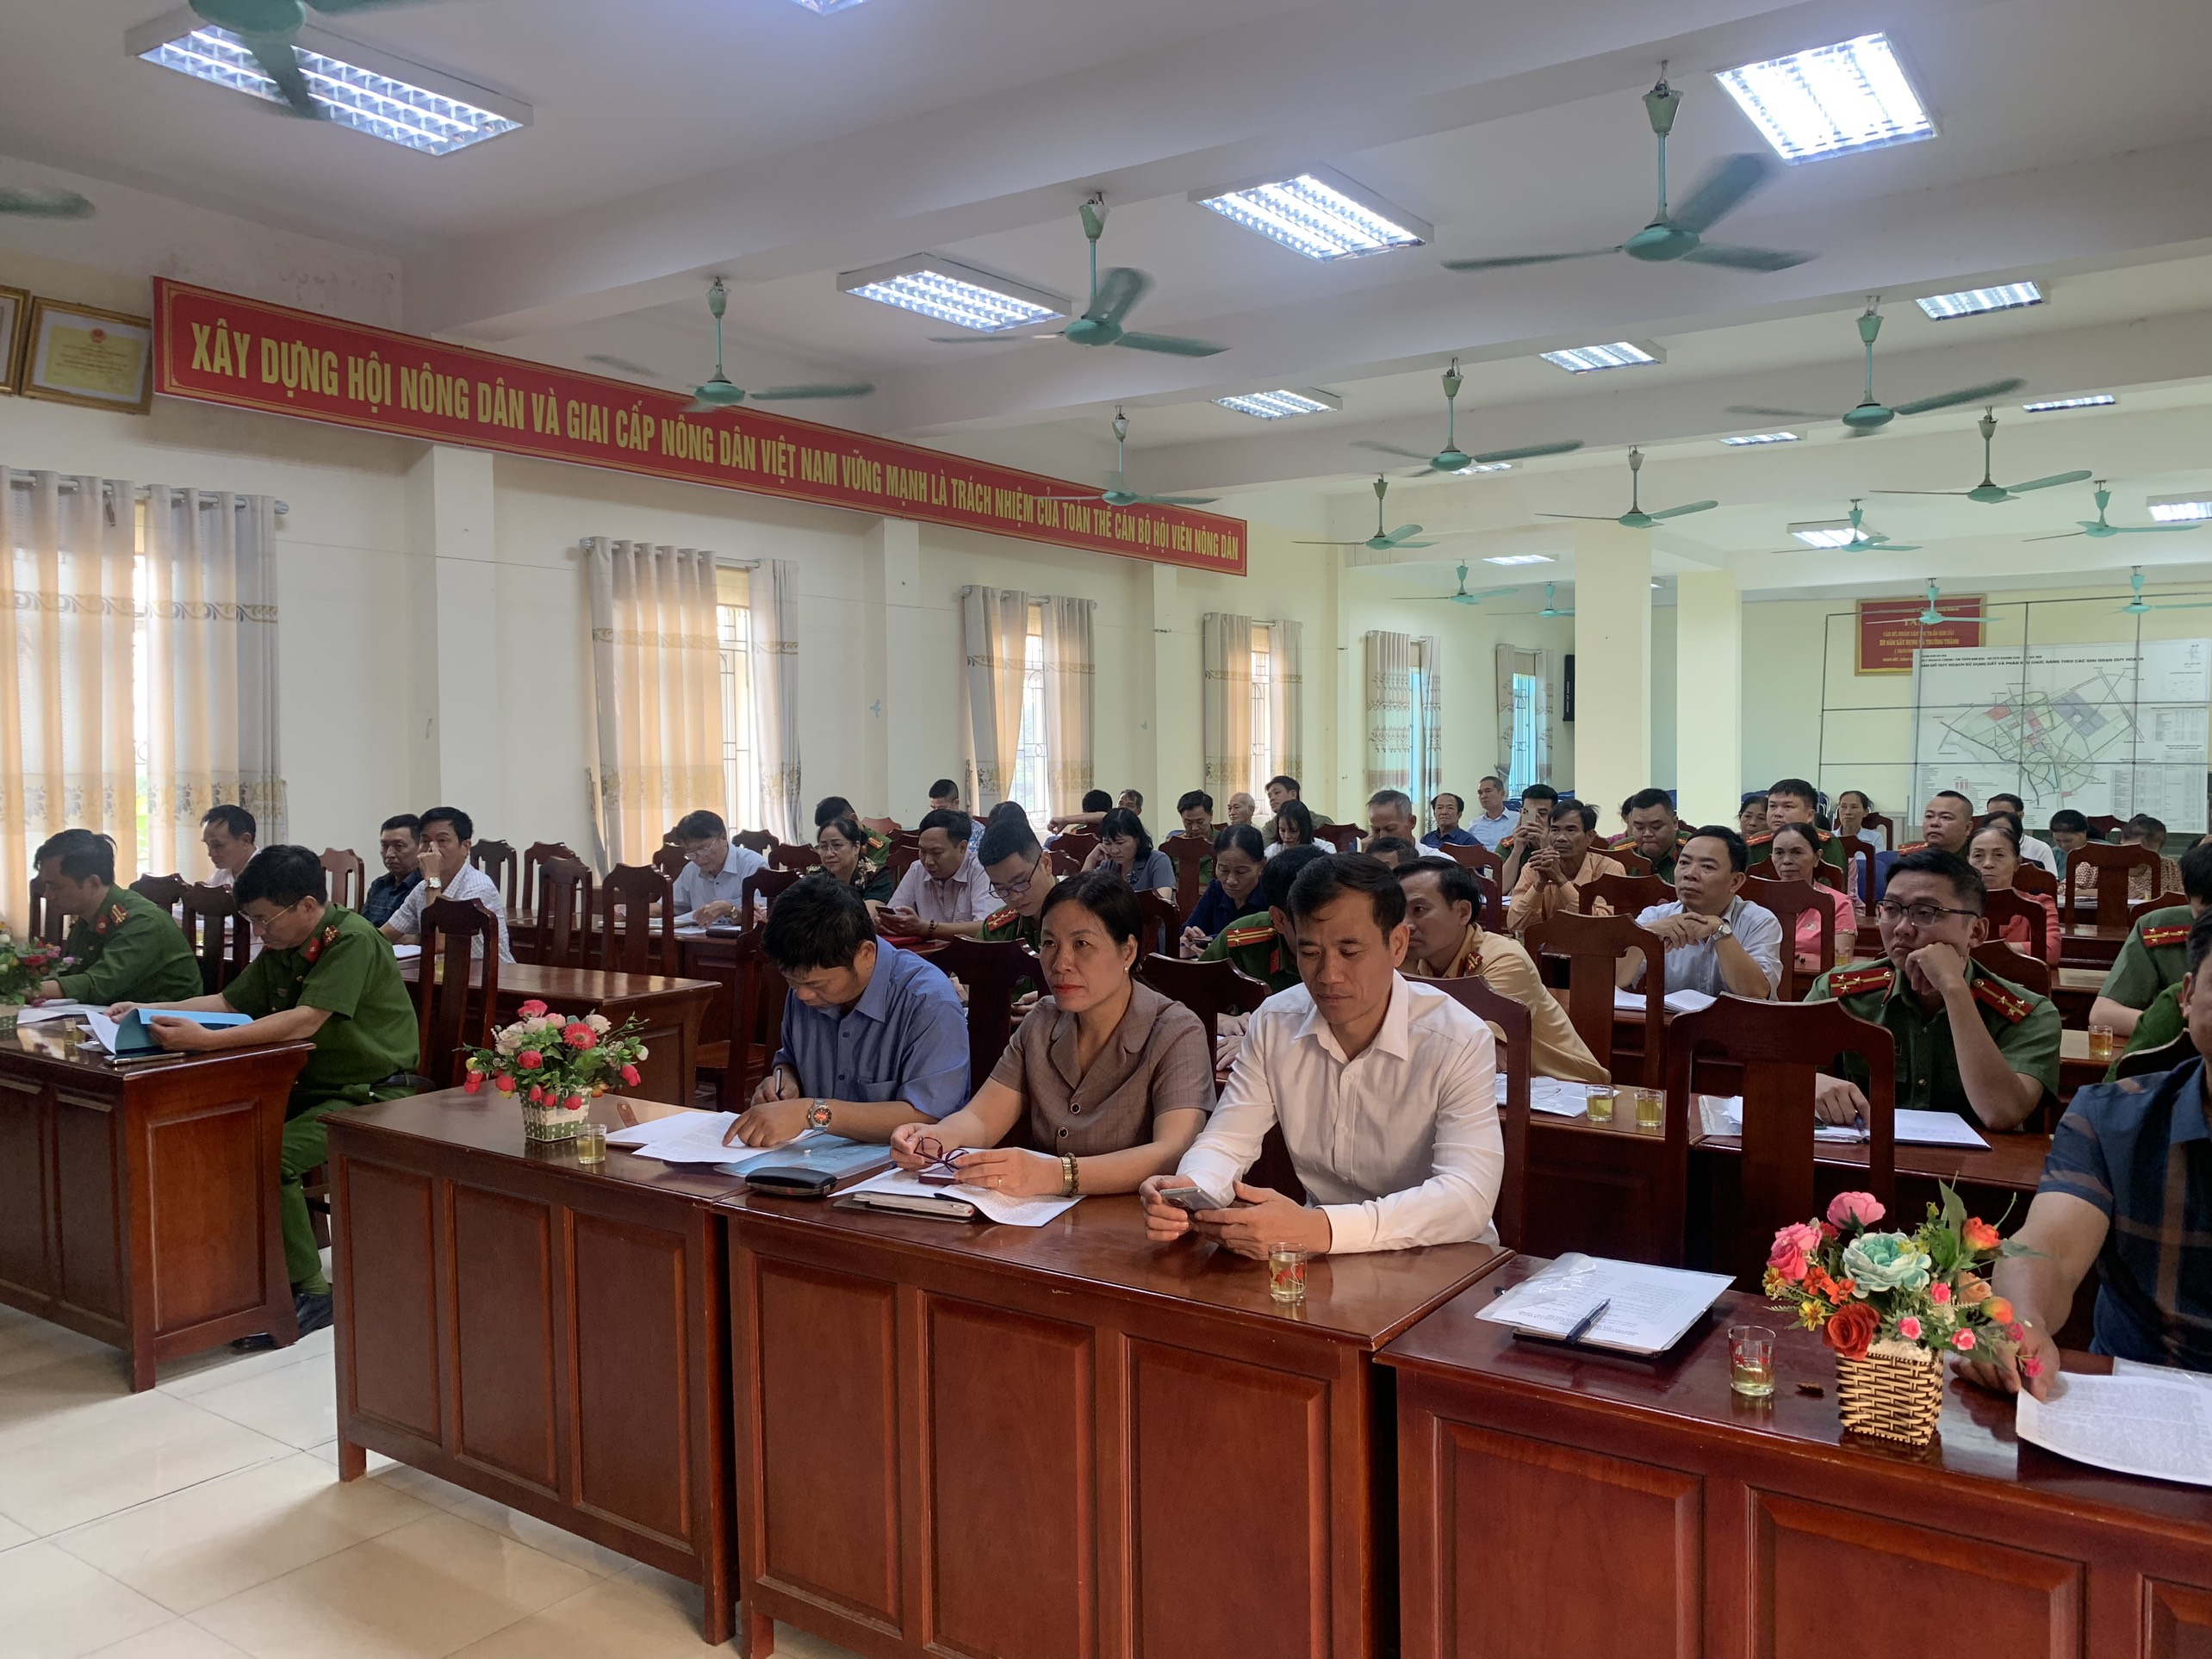 Hội nghị Công an lắng nghe ý kiến nhân dân đánh giá tình hình ANTT và góp ý về trách nhiệm của cán bộ cảnh sát khu vực trong công tác đảm bảo ANTT trên địa bàn thị trấn Kim Bài năm 2023